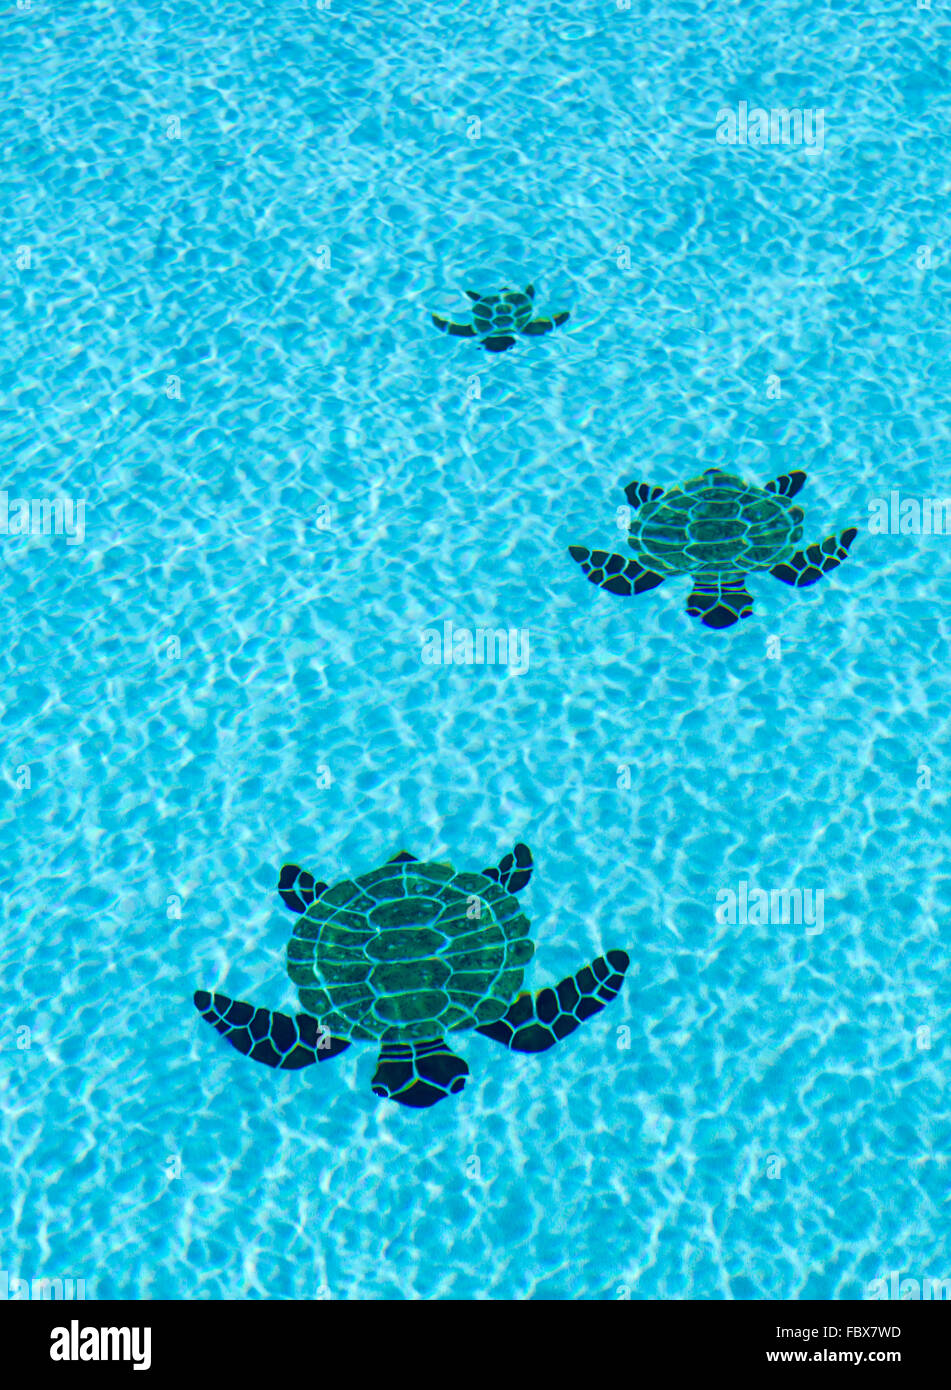 Sol carrelé trois tortues sur fond de piscine Banque D'Images